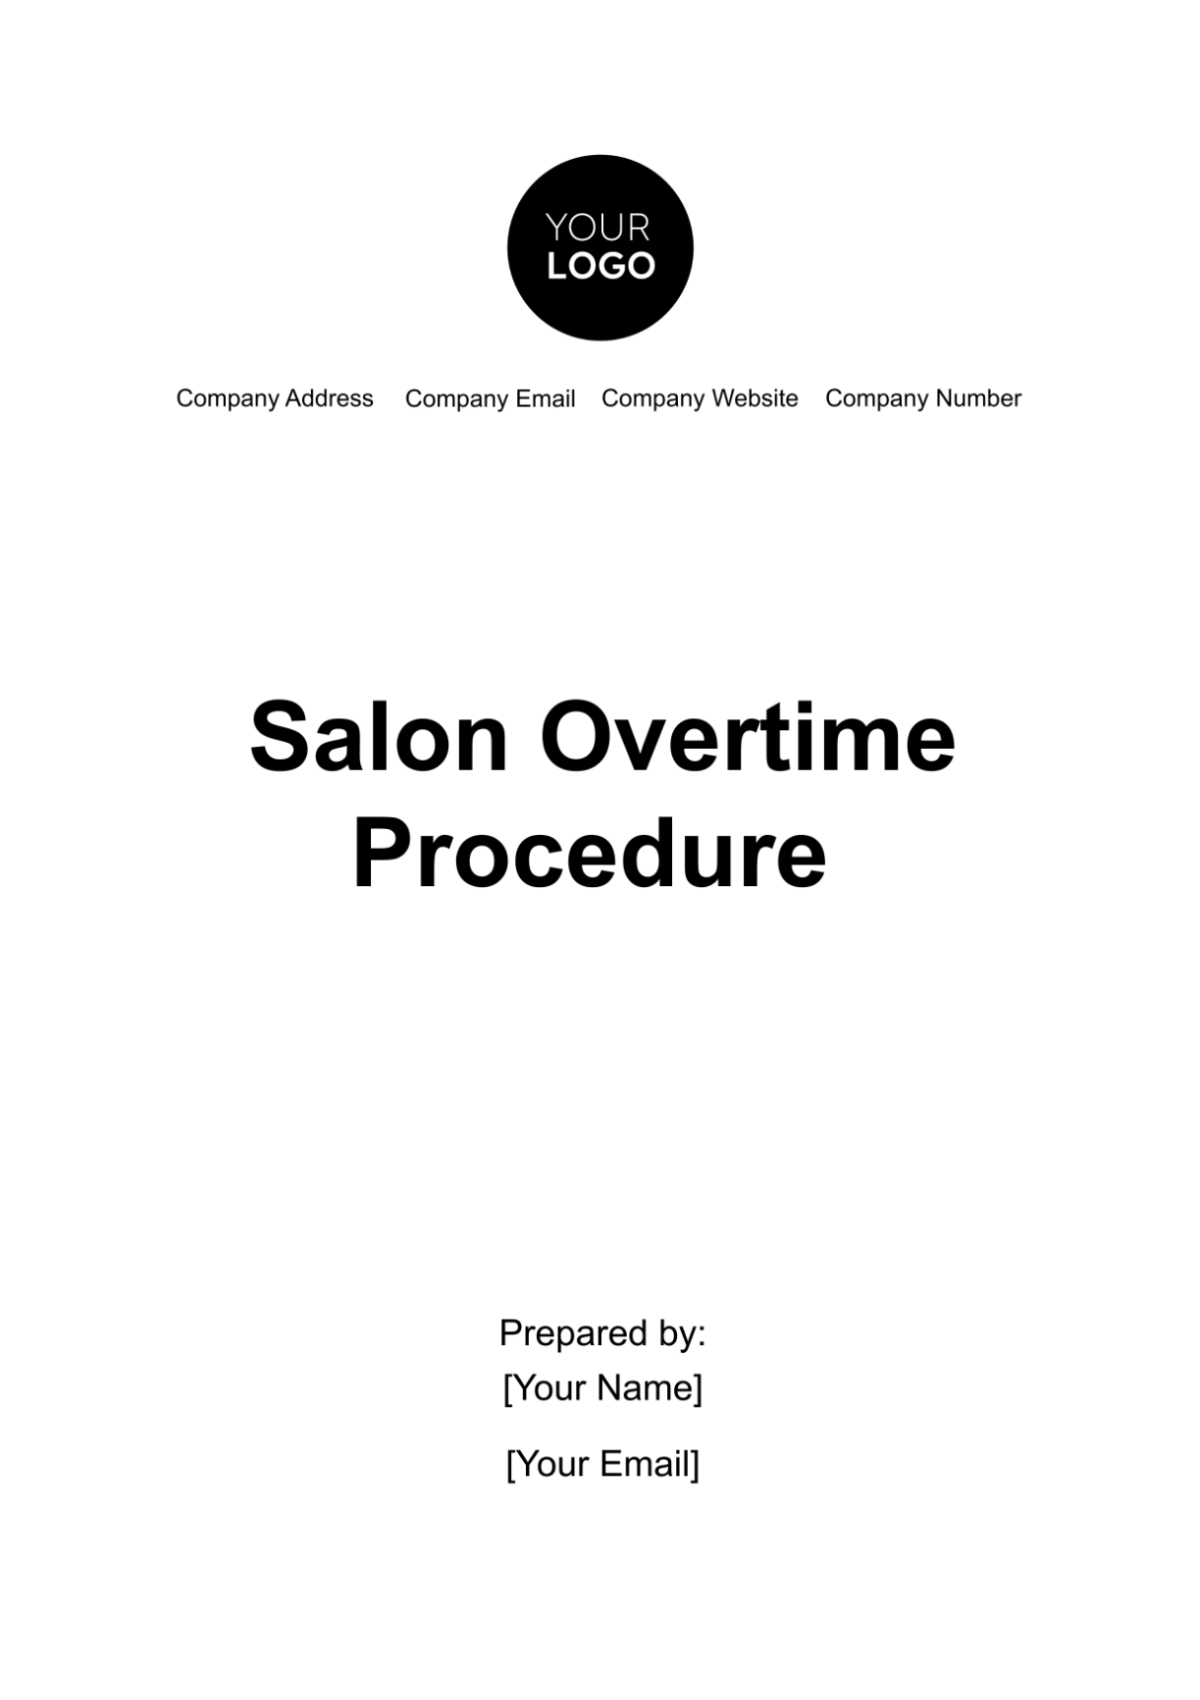 Salon Overtime Procedure Template